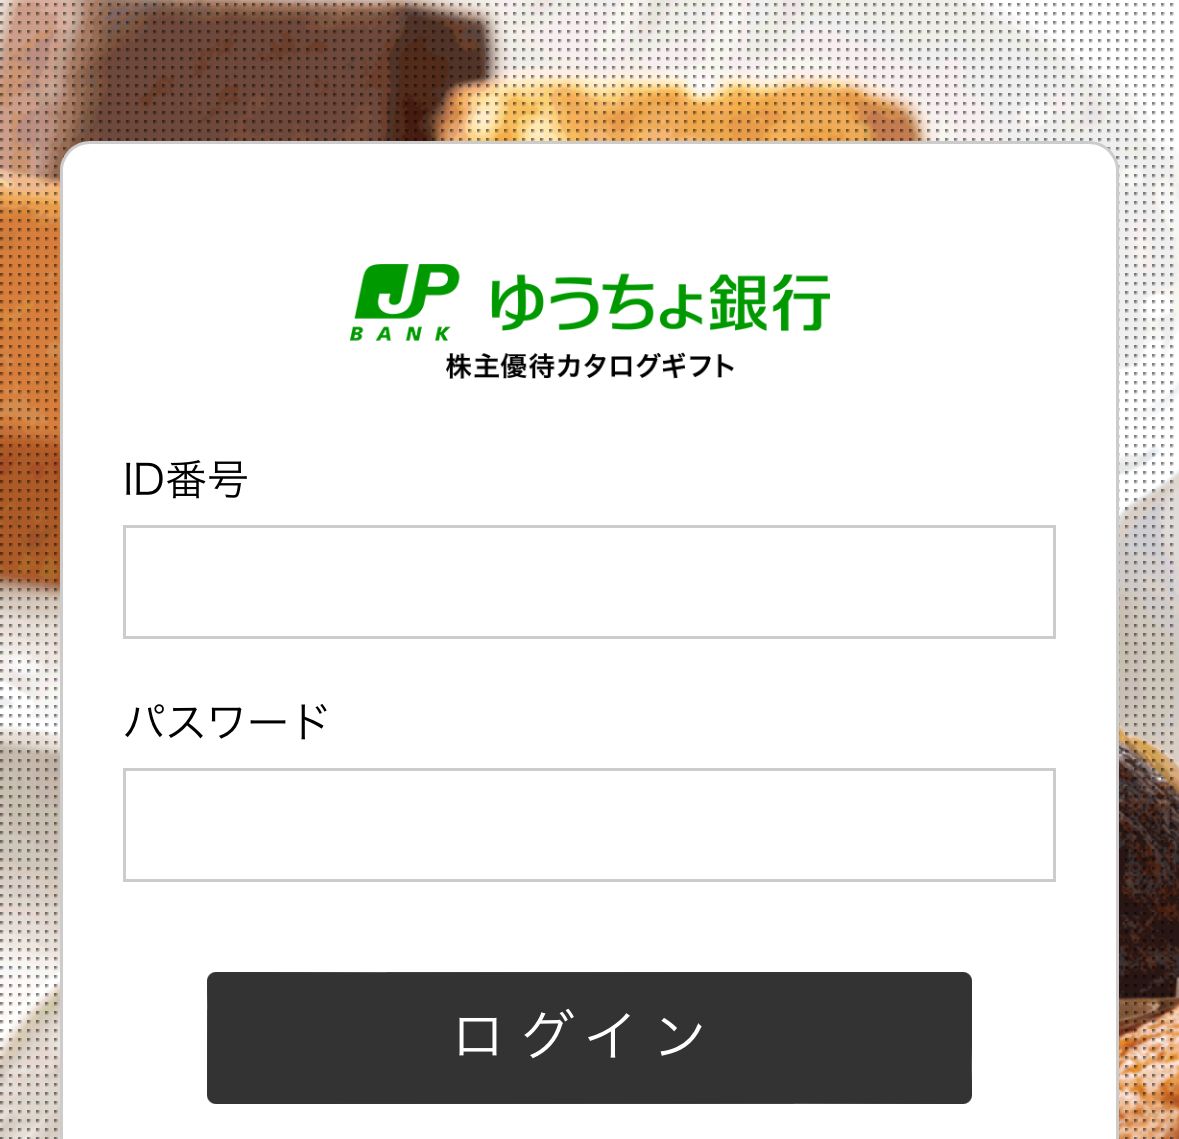 ゆうちょ銀行の「株主優待カタログギフト」ログイン画面